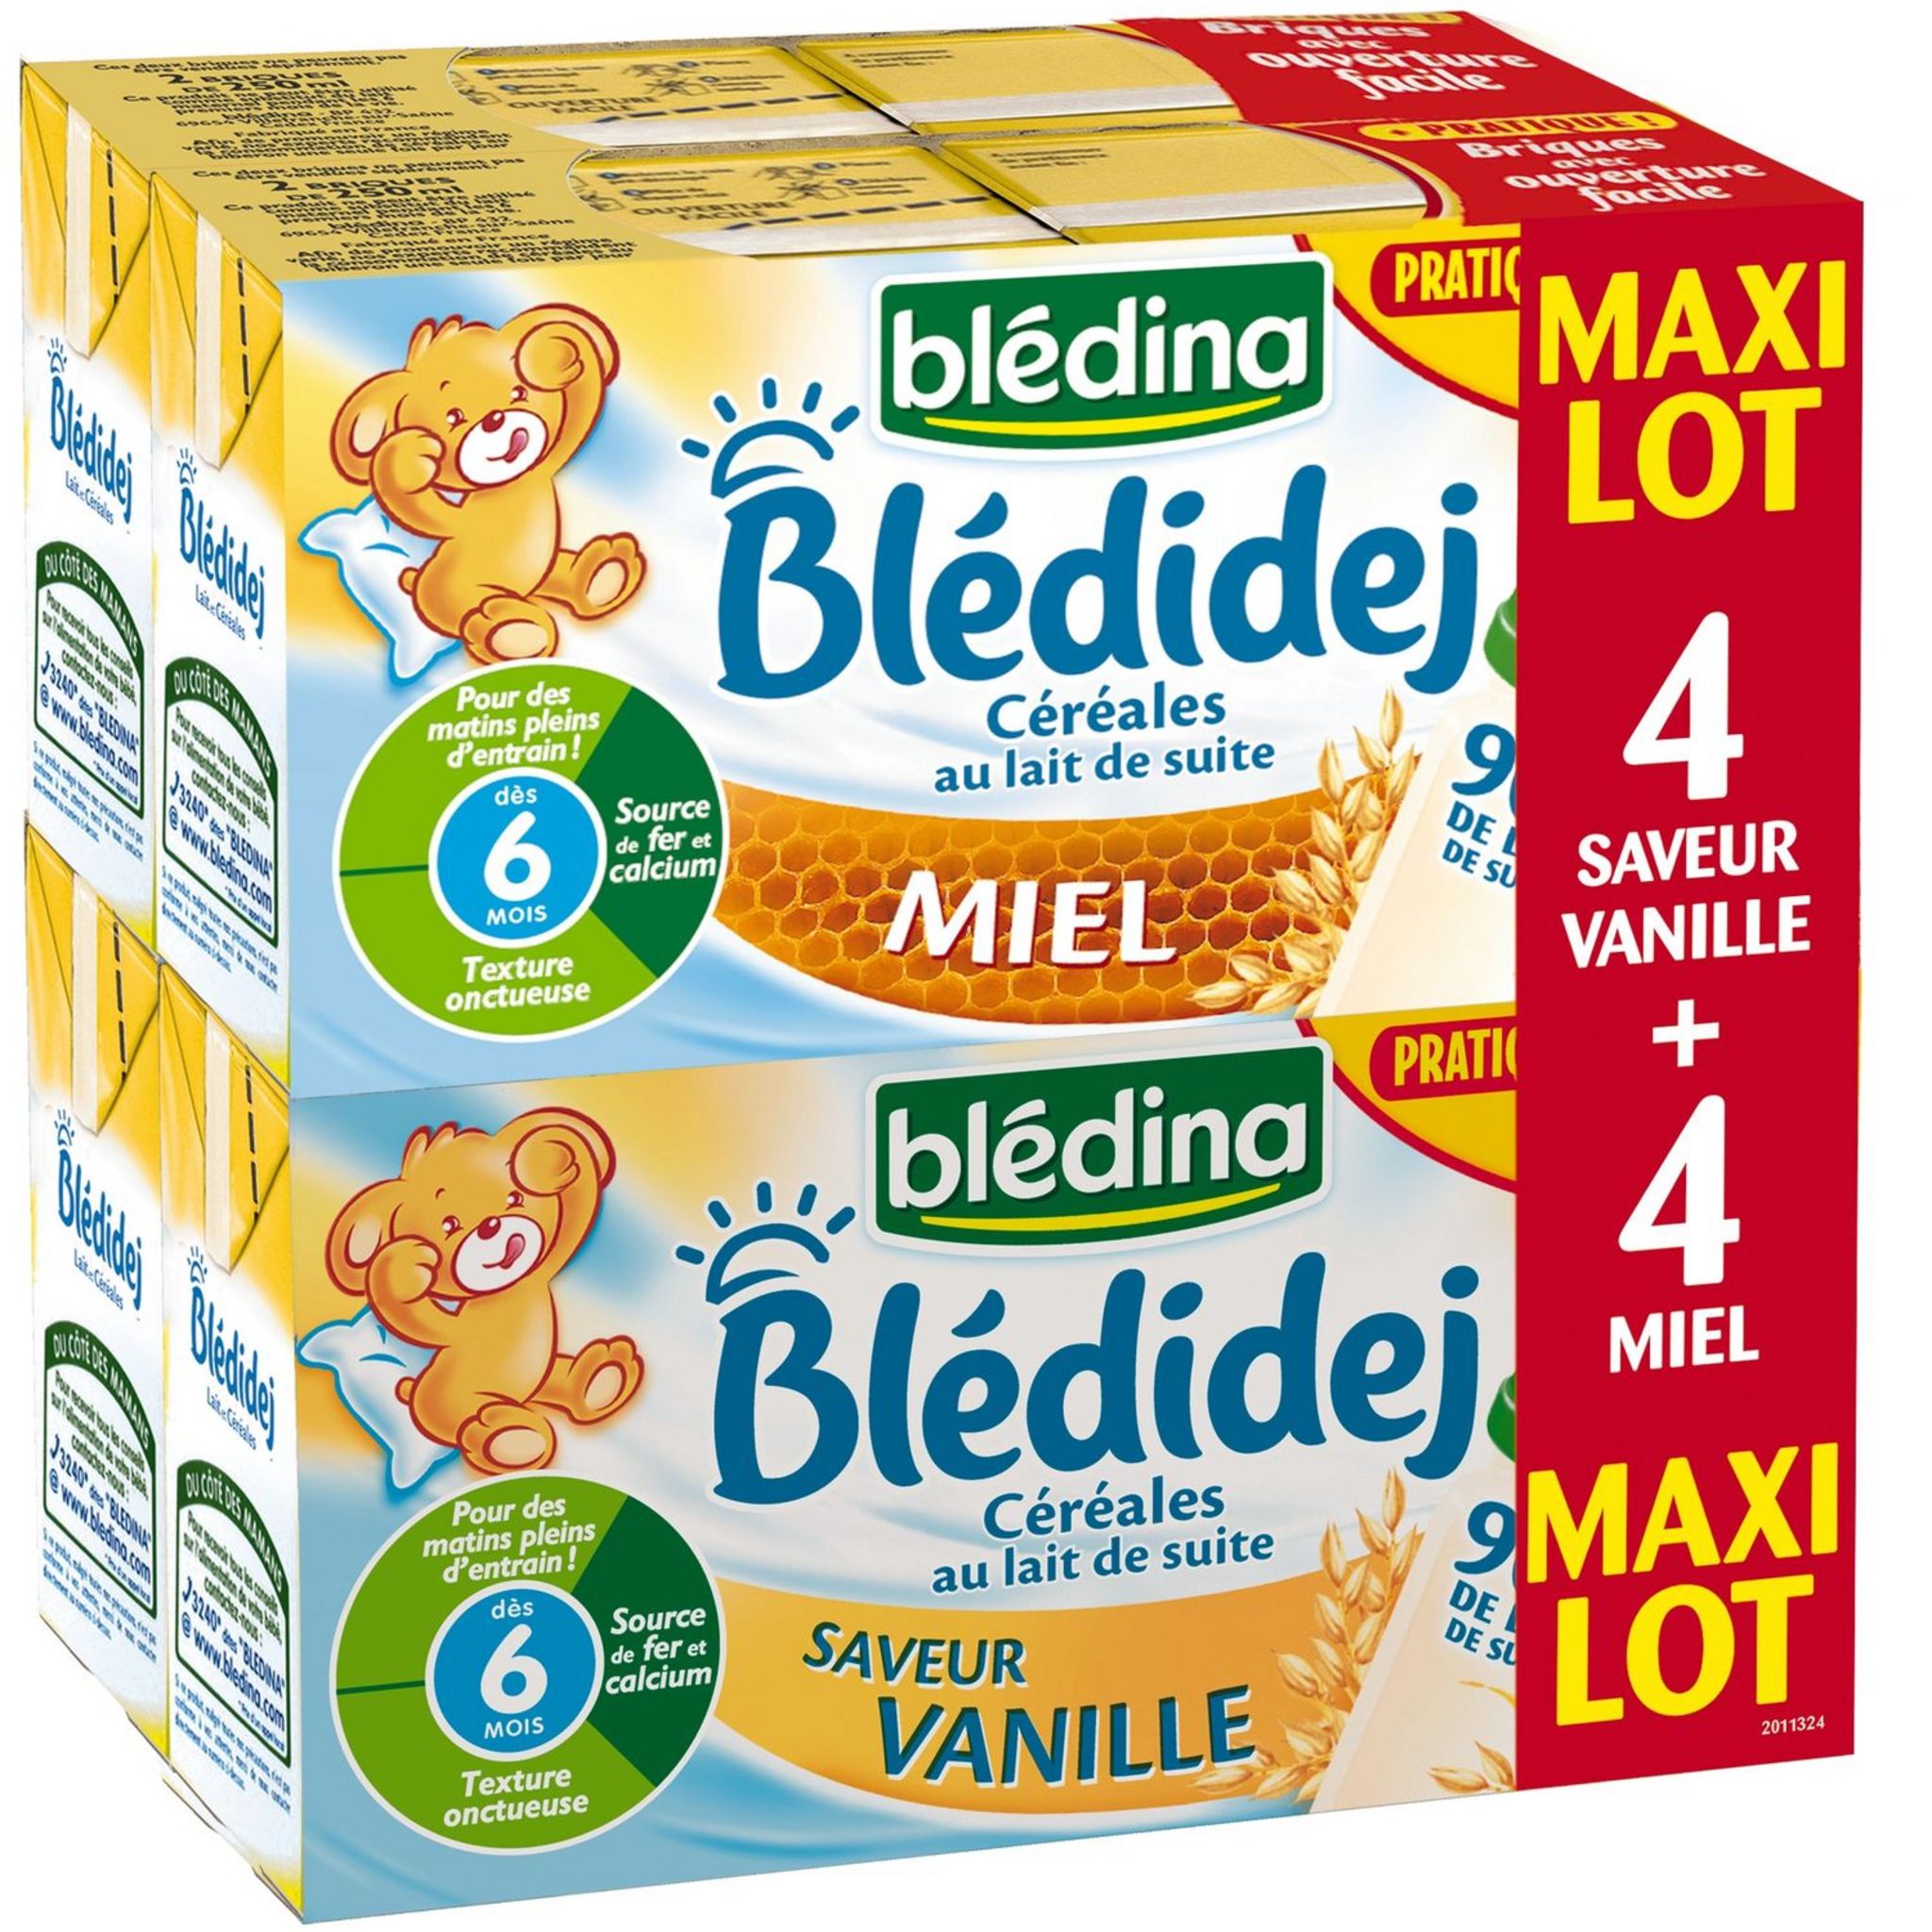 BLEDINA Blédidej vanille et miel 8x25cl dès 6 mois prix choc pas cher 